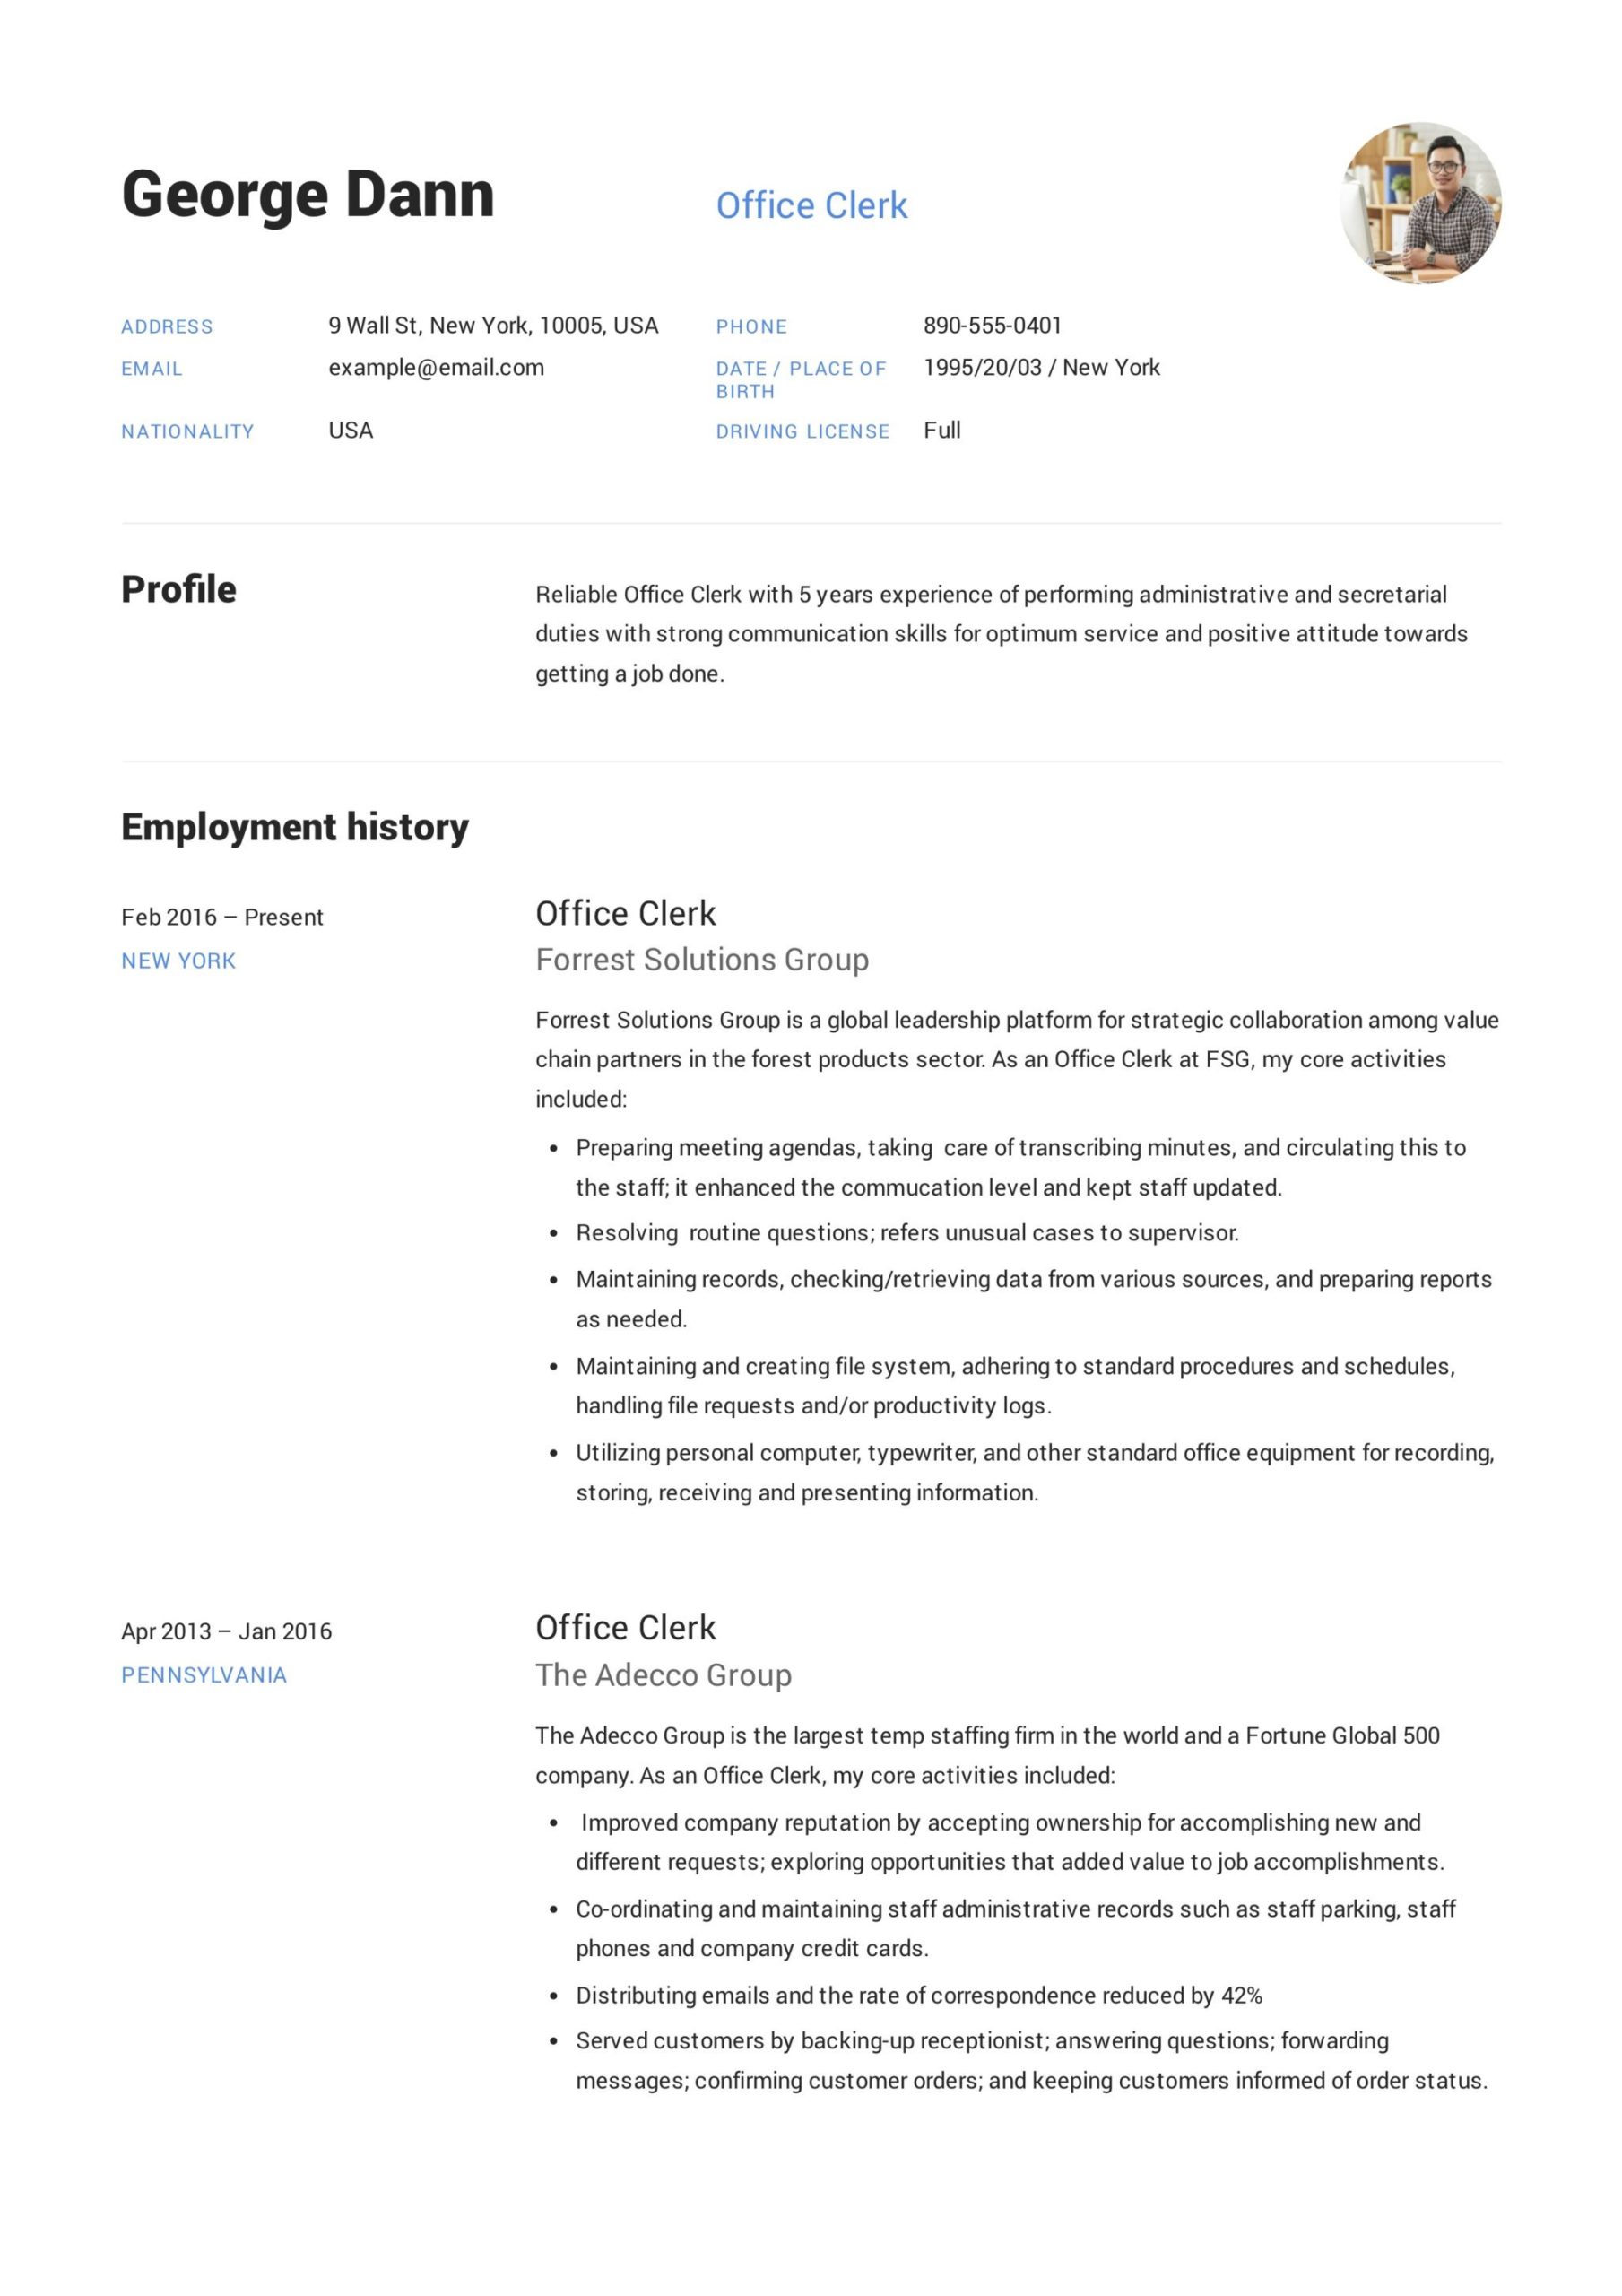 Sample Skills for General Office Clerk Resume Office Clerk Resume & Guide  12 Samples Pdf 2021